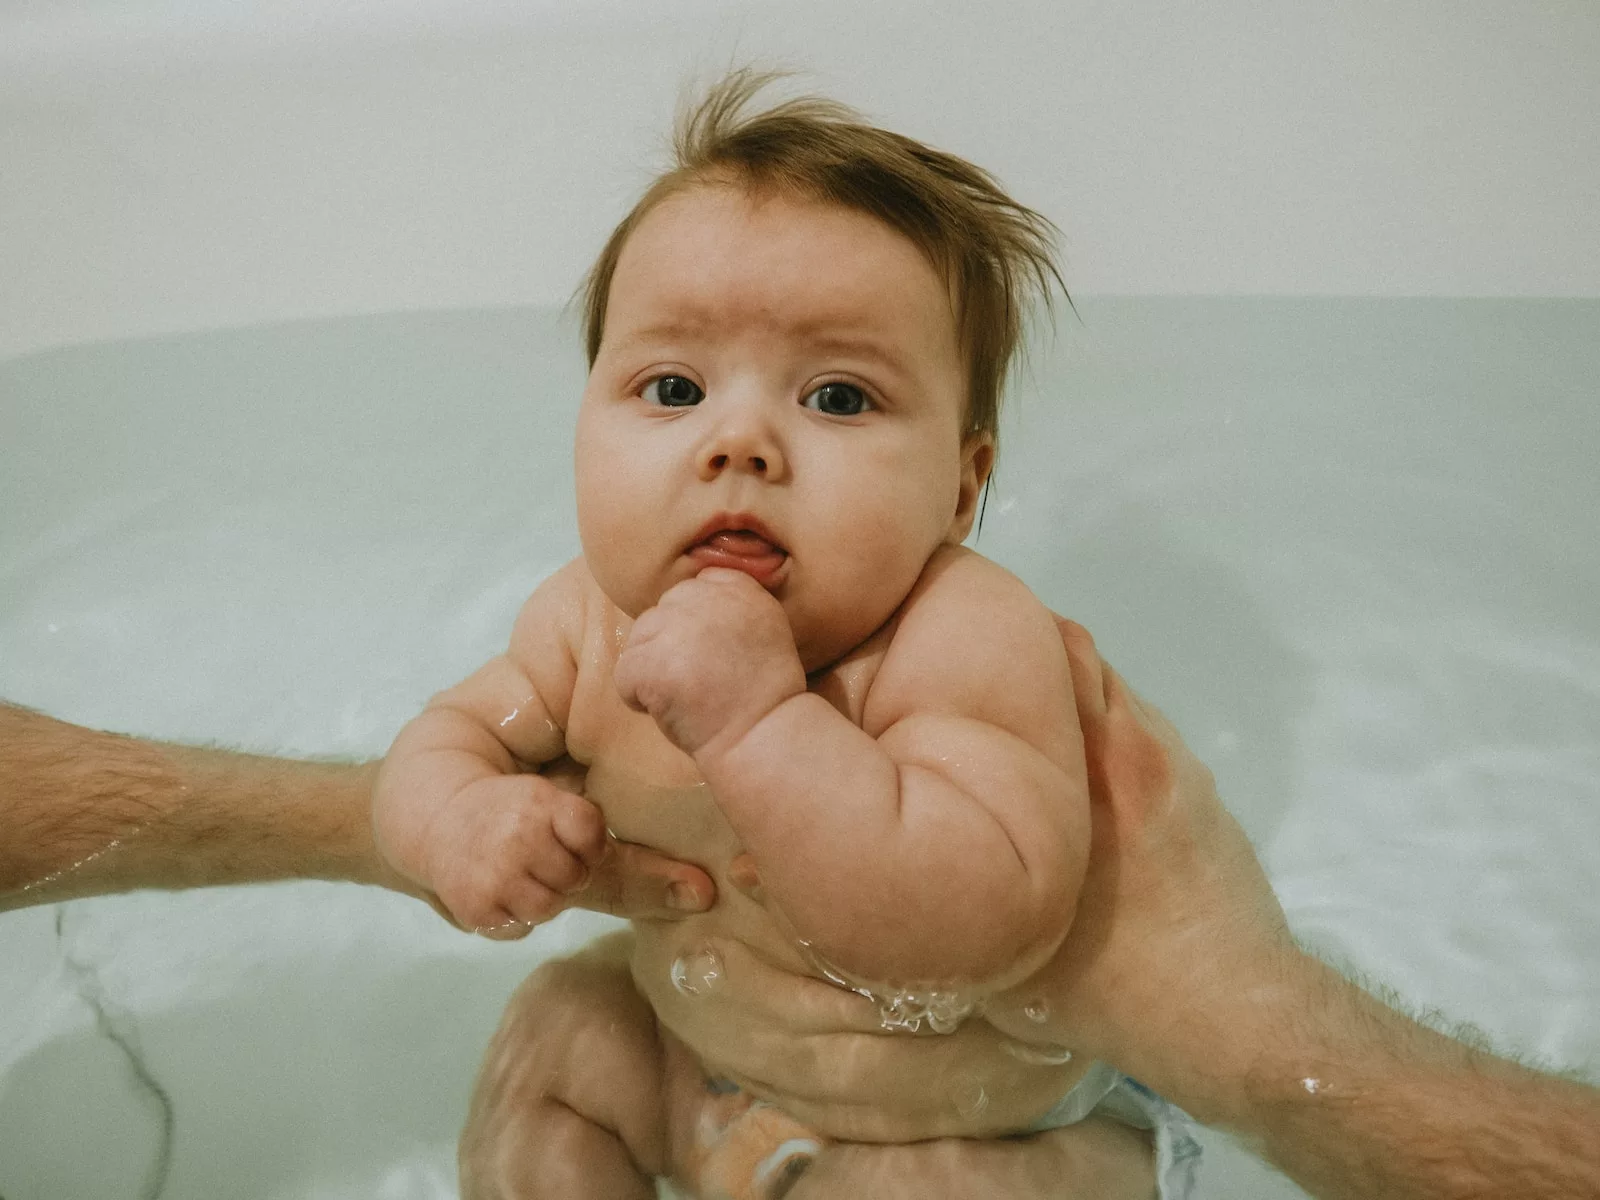 a man holding a baby in a bathtub